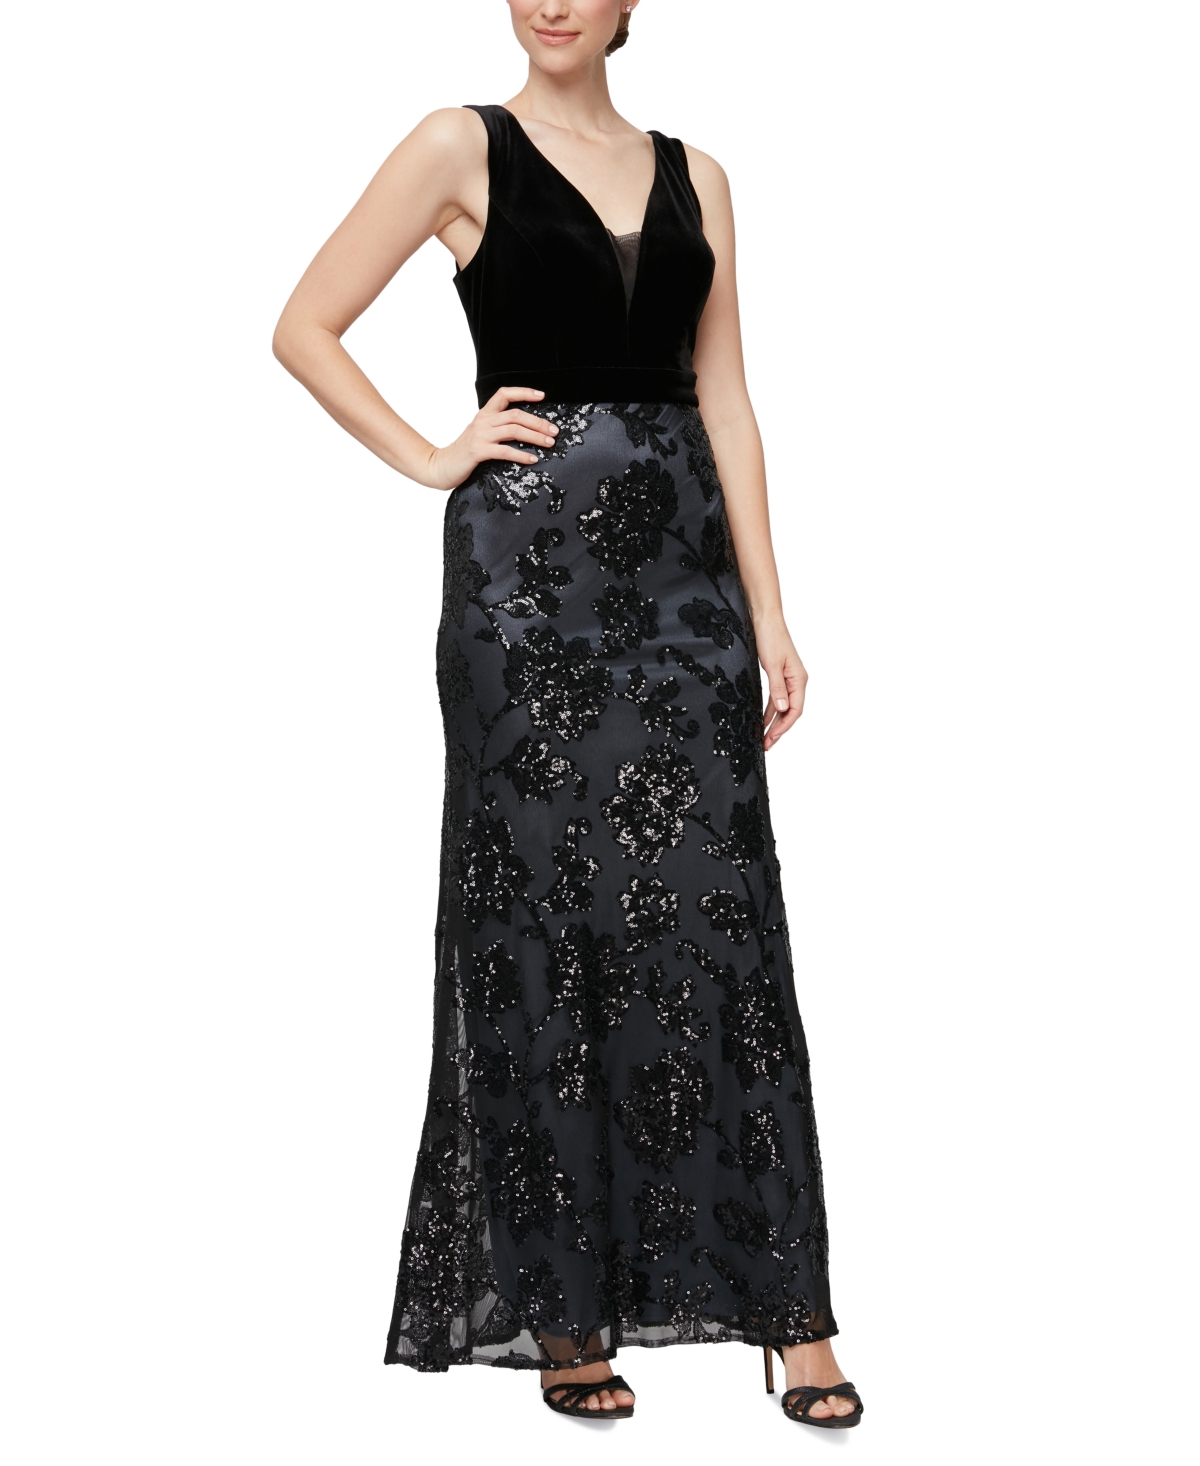 Women's Velvet Bodice Sequined Gown - Black/pewter